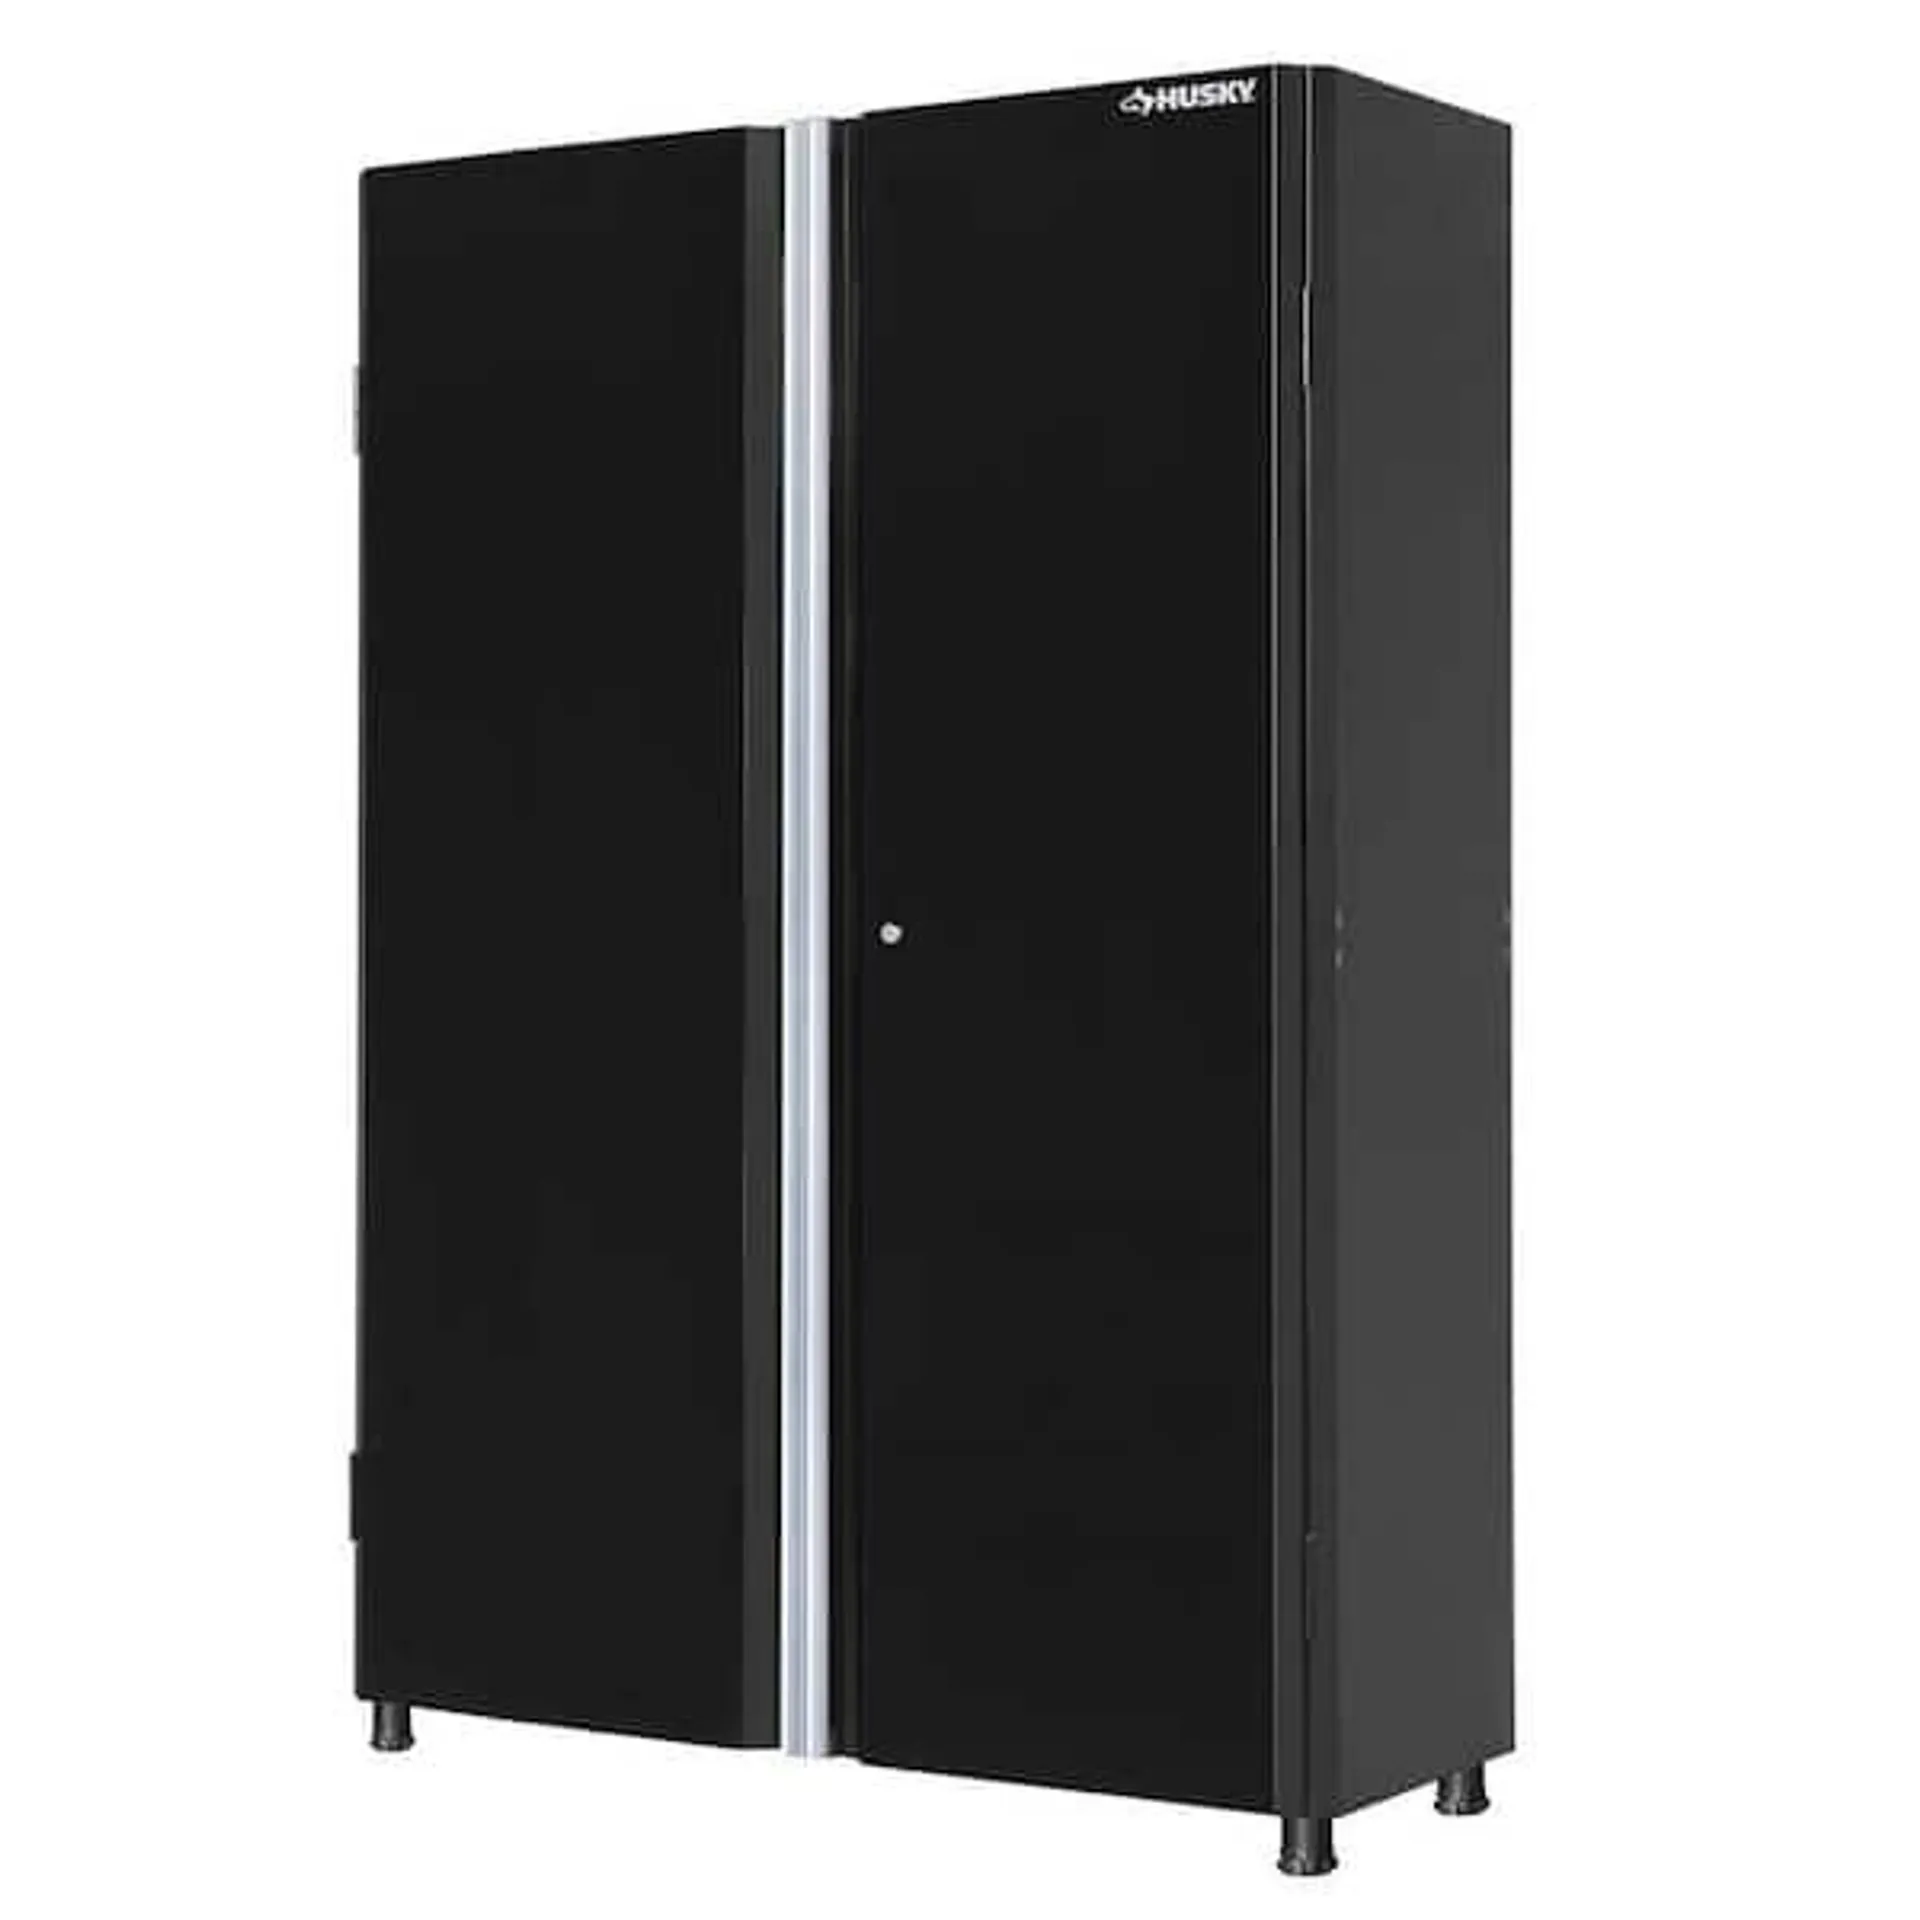 Ready-to-Assemble 24-Gauge Steel Freestanding Garage Cabinet in Black (48 in. W x 72 in. H x 18 in. D)